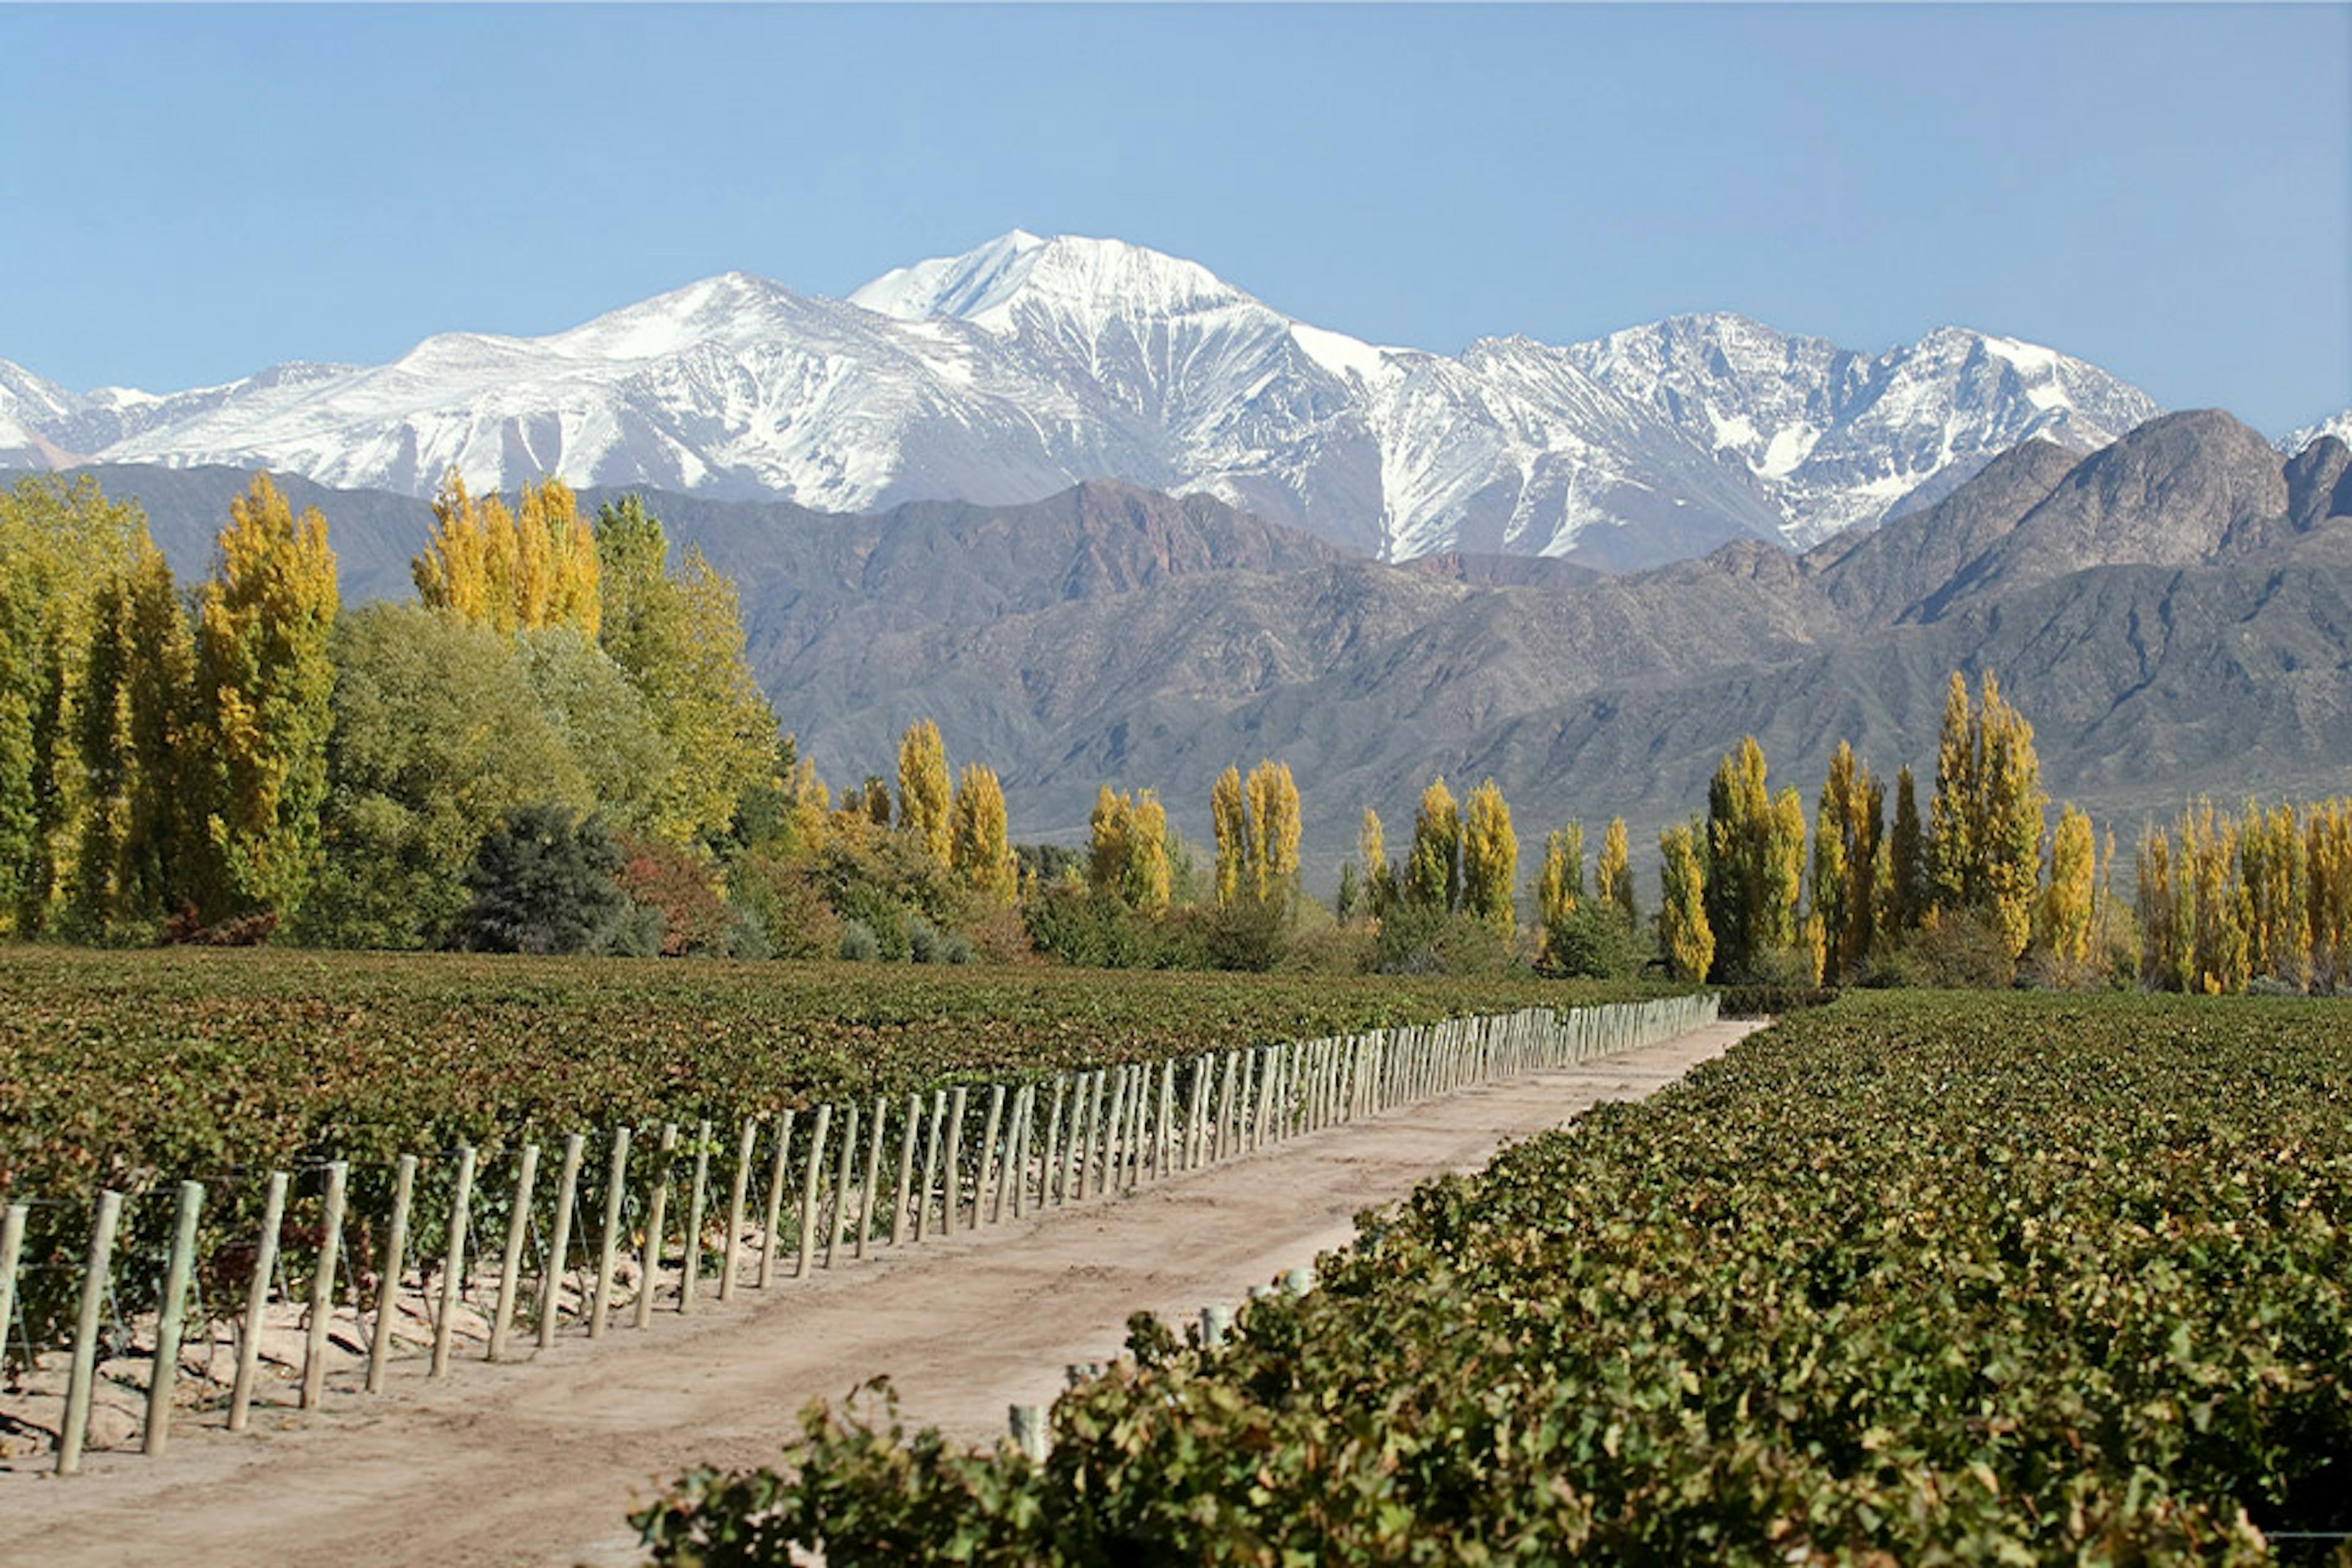 Terrazas de los Andes’ Las Compuertas vineyard, planted in 1929 © Terrazas de los Andes